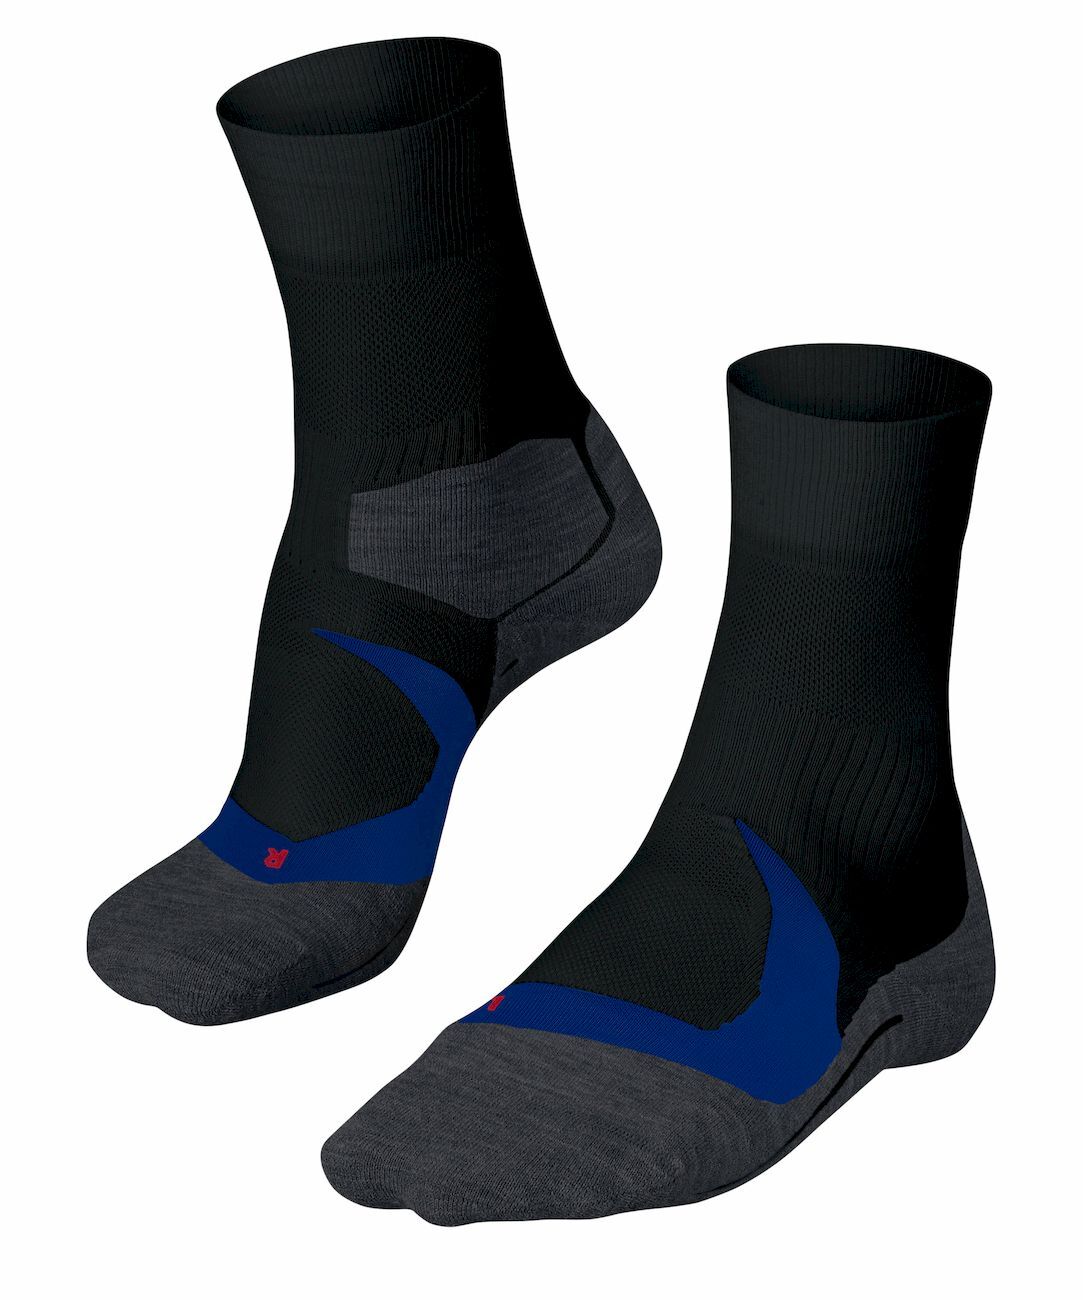 Falke RU4 Cool - Running socks - Men's